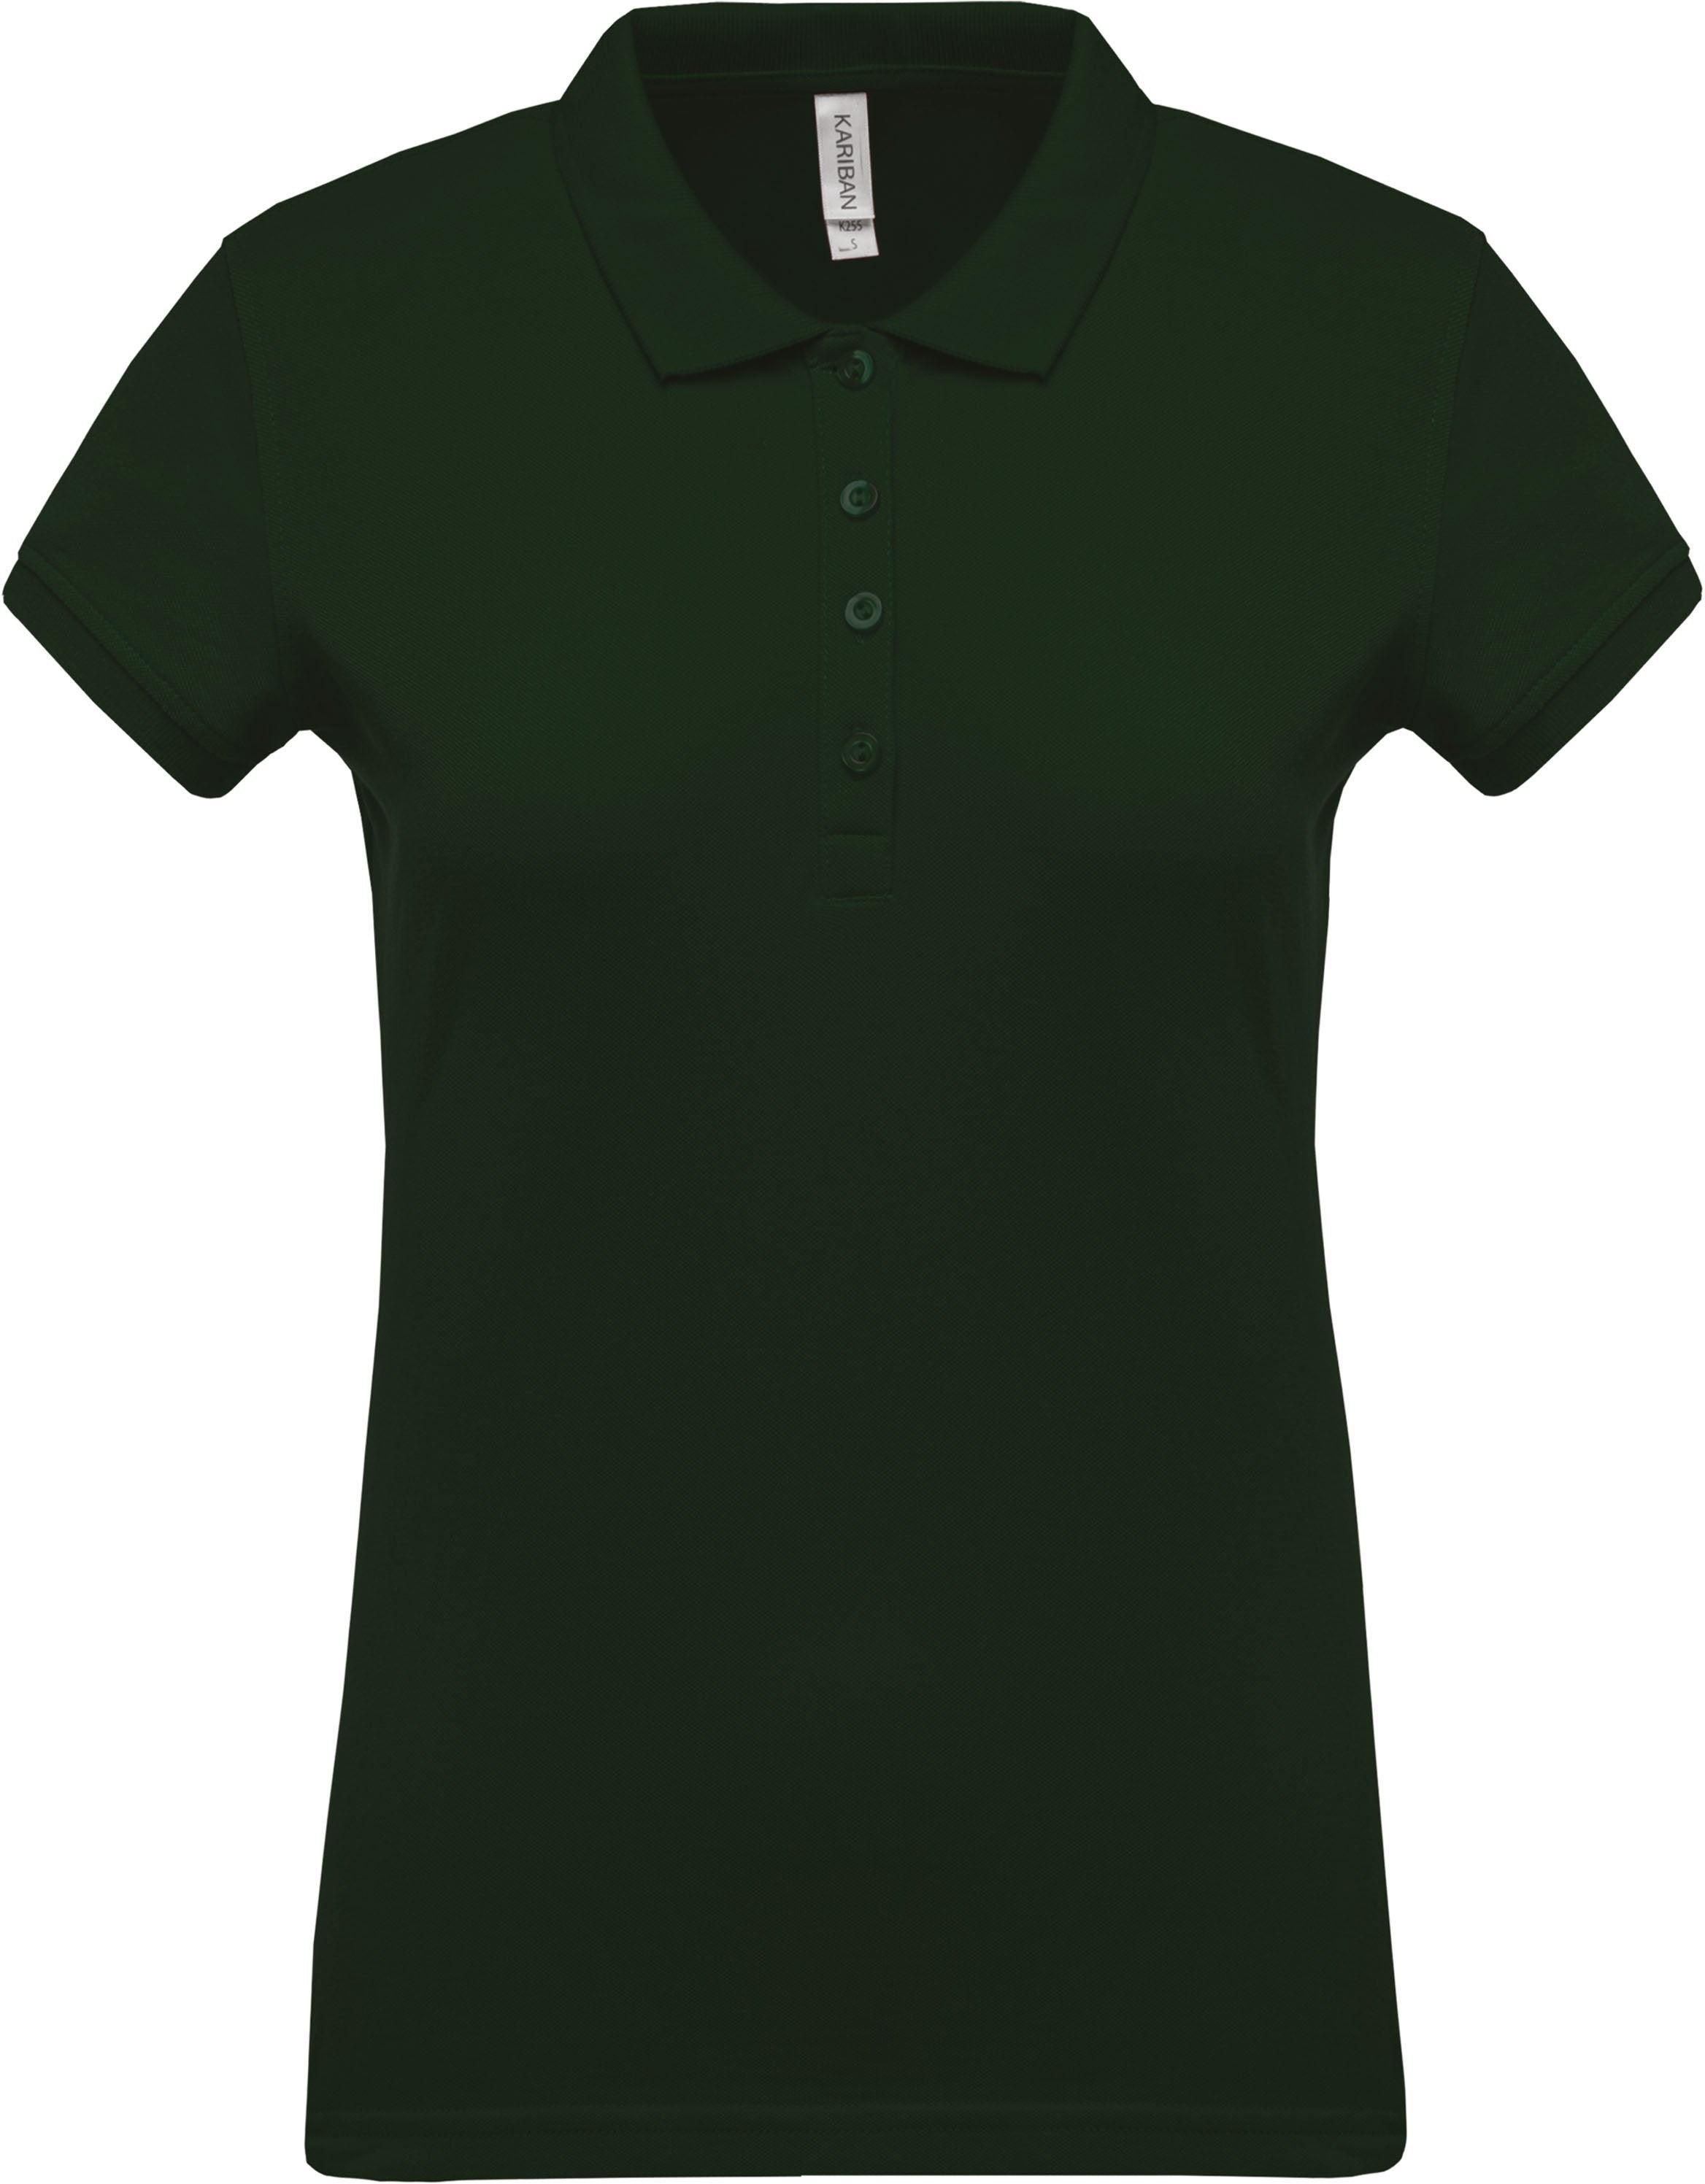 Polo personnalisé piqué manches courtes golf team - K255 couleurs classiques. polo femme Kariban forest green XS 